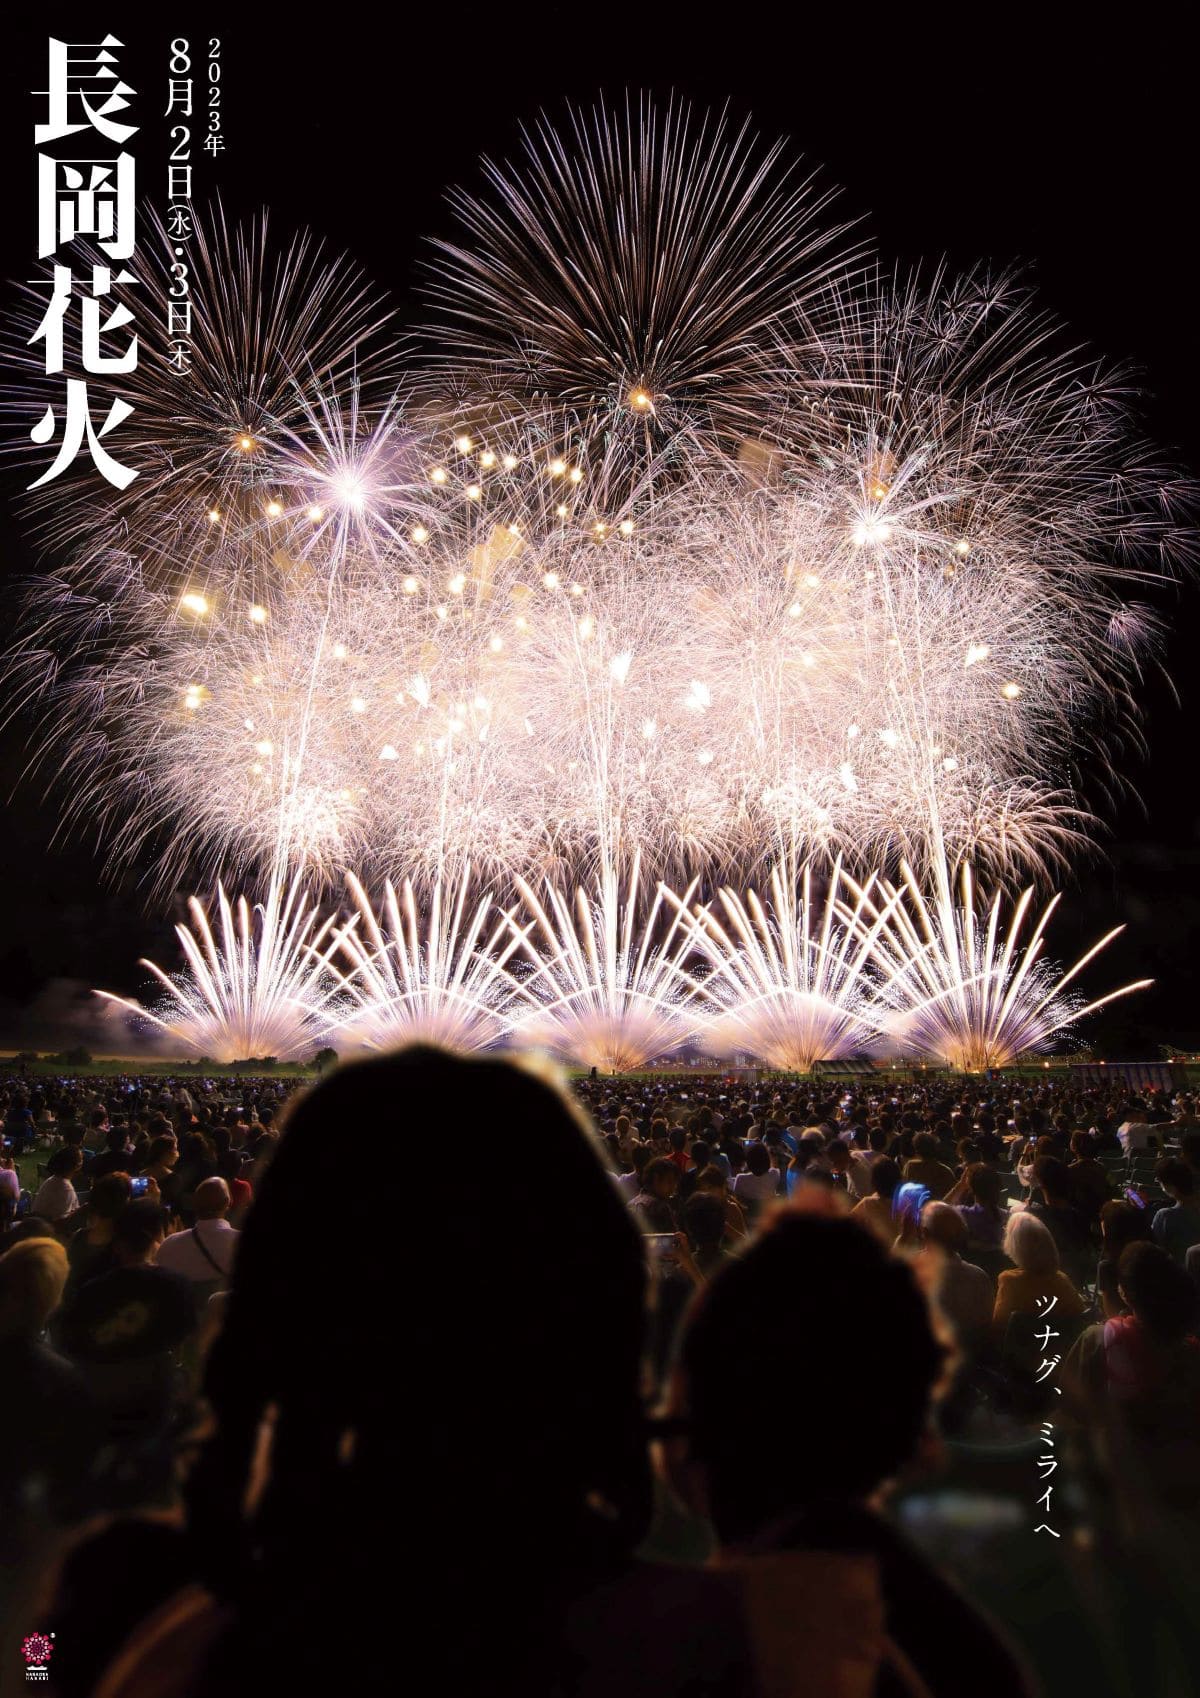 長岡まつり大花火大会 2022 8月3日 フェニックスエリア席 6枚 - イベント